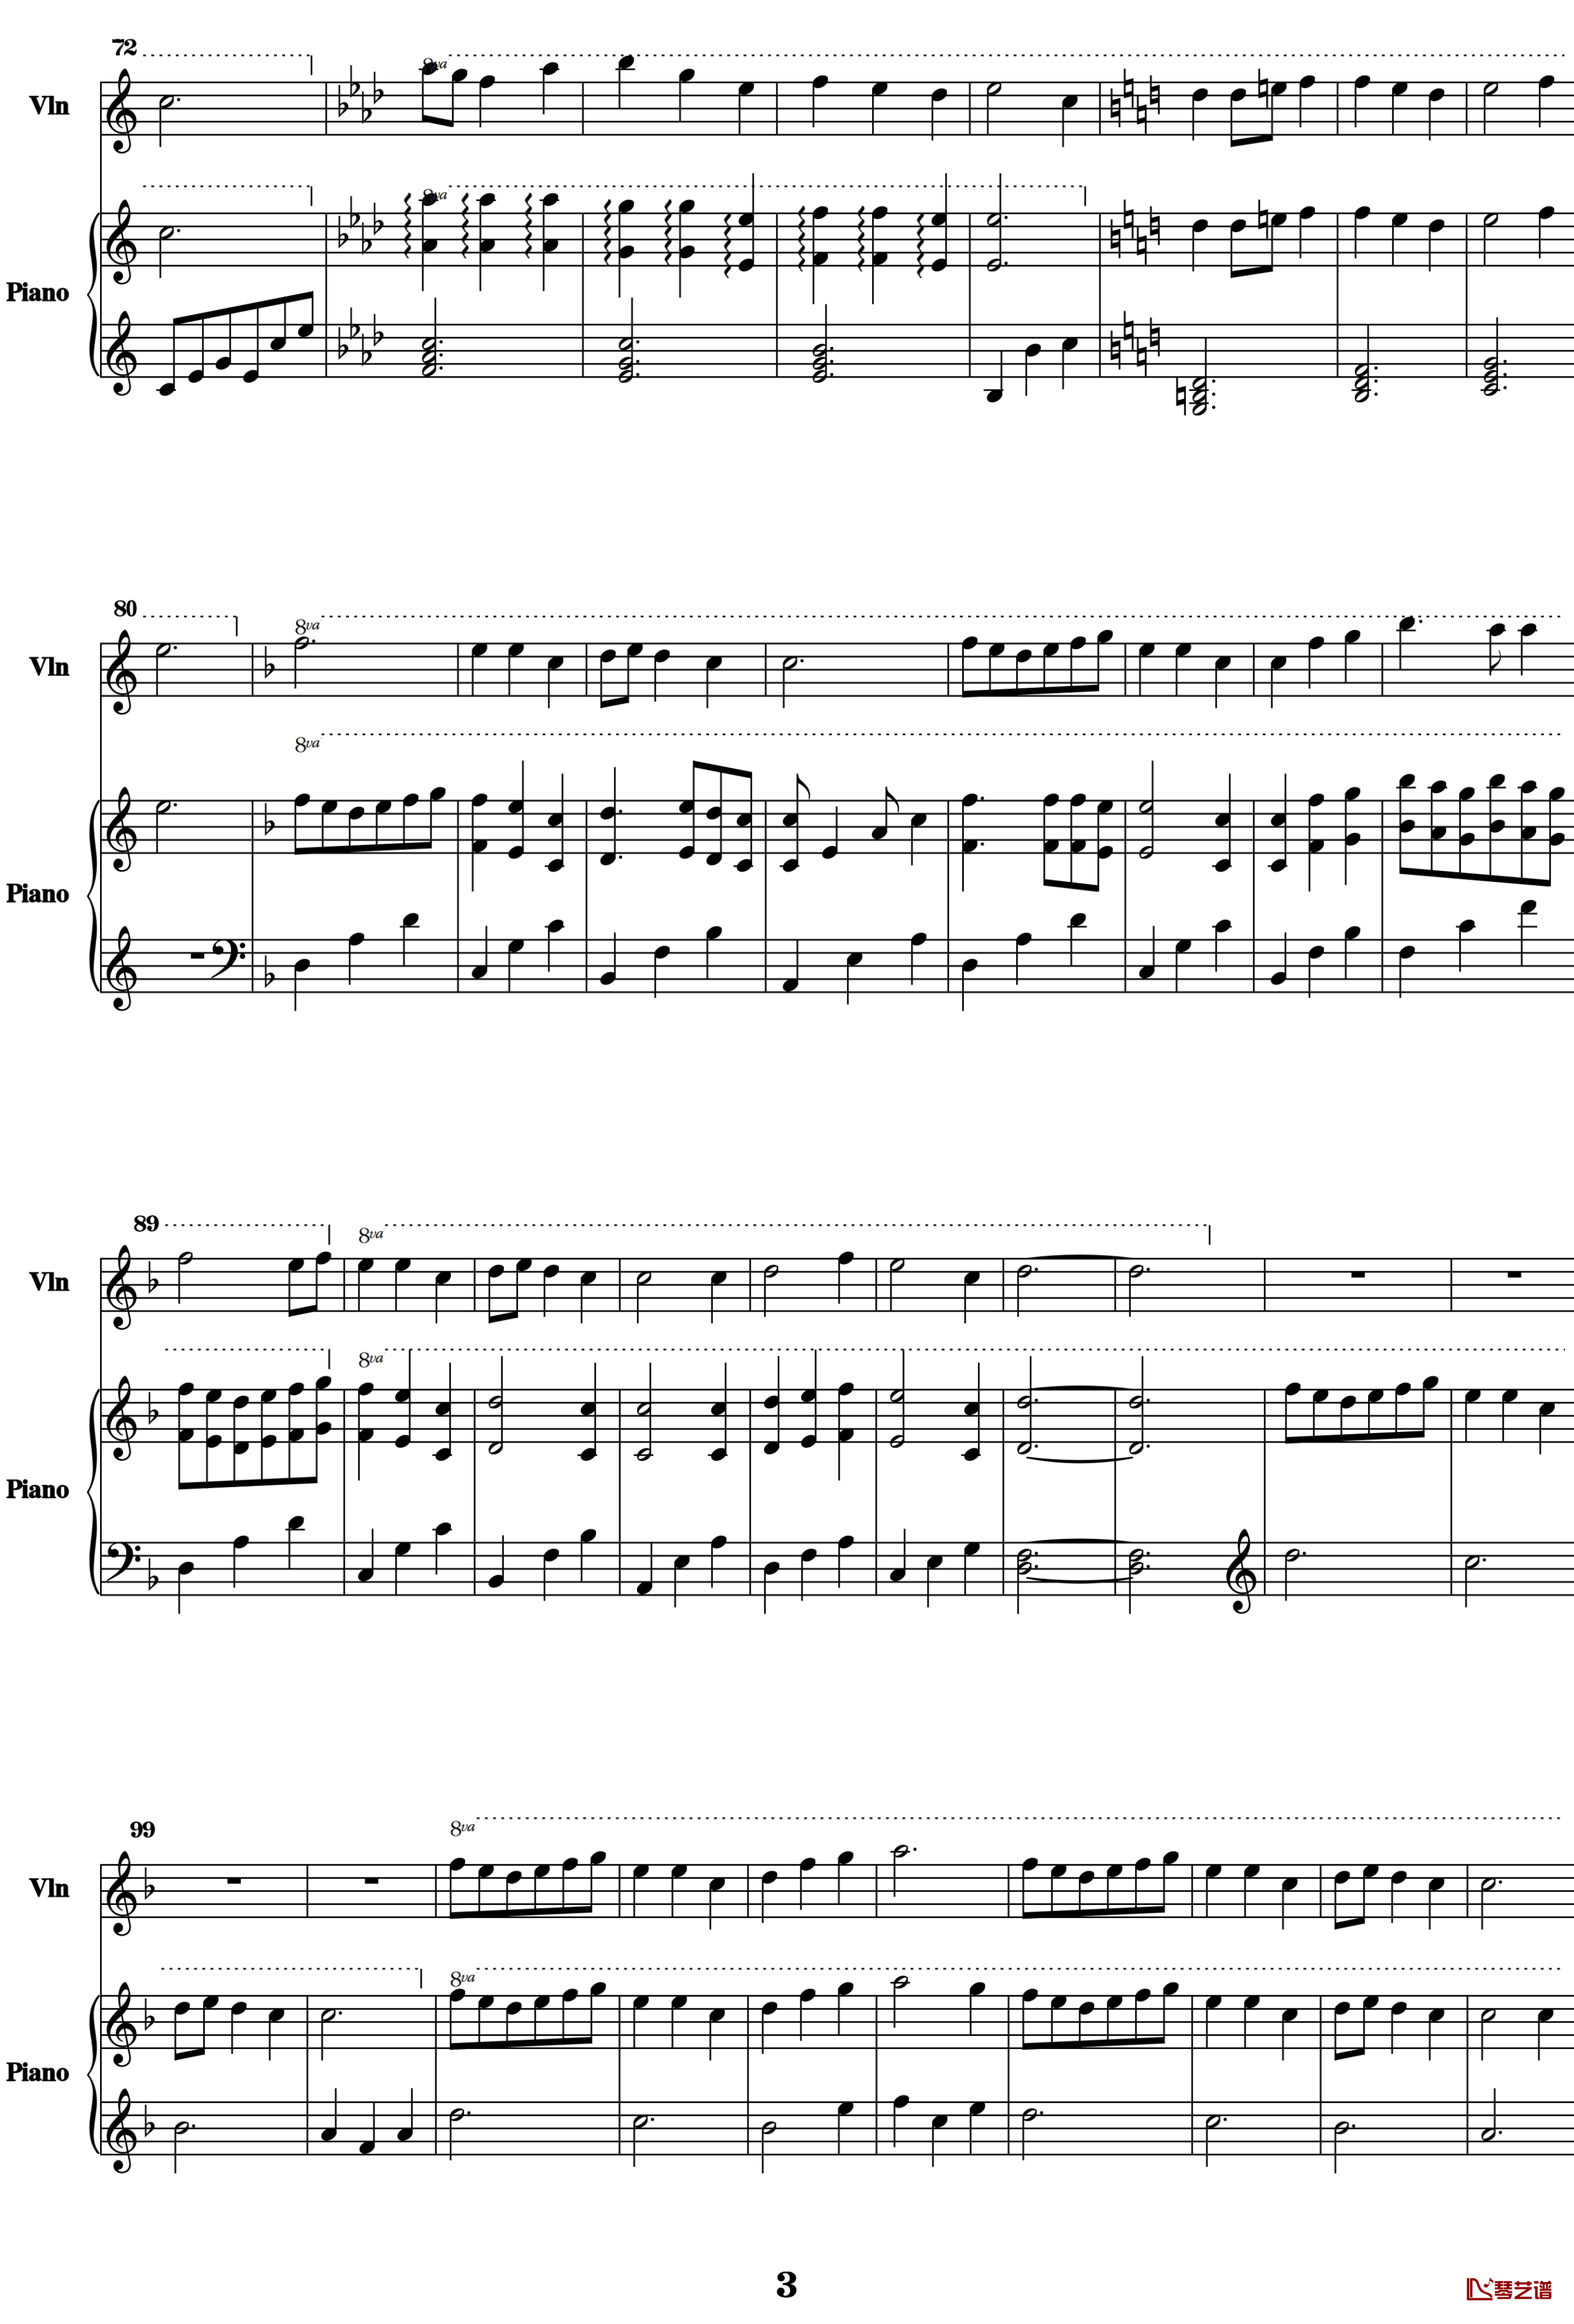 蕾西钢琴谱-小提琴钢琴合奏版-潘朵拉之心3